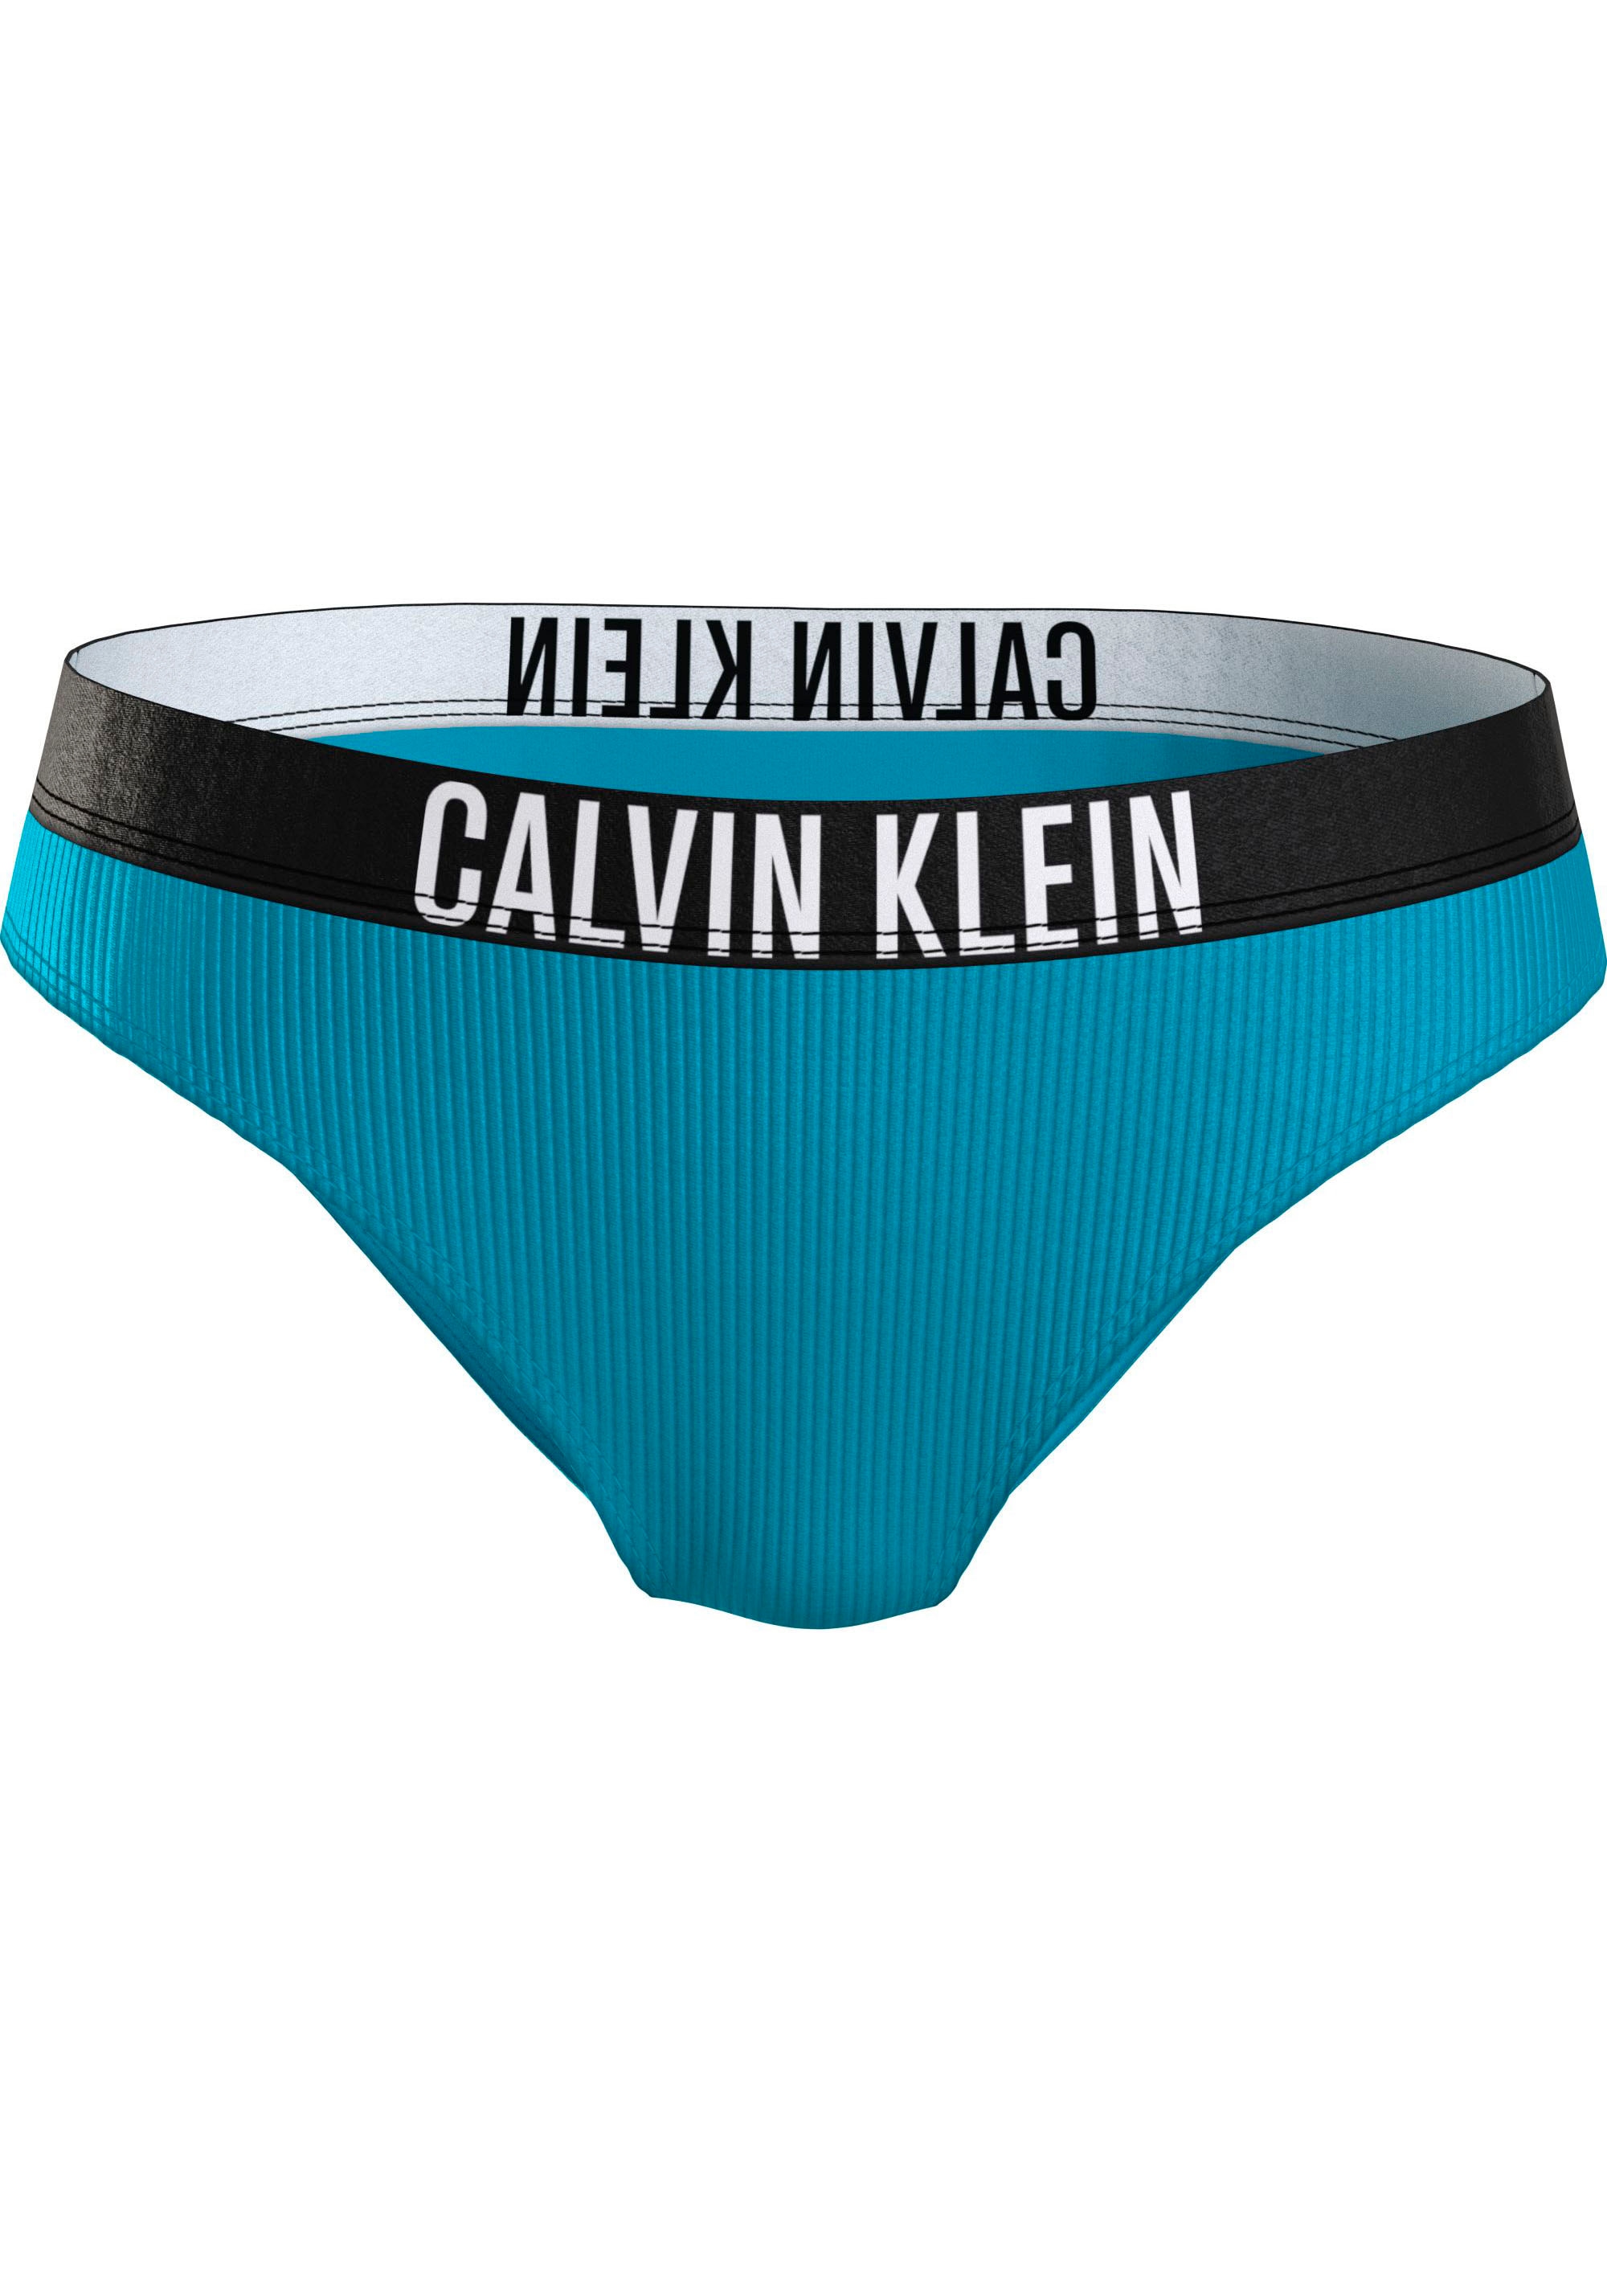 BIKINI«, ♕ Bikini-Hose bei Klein Calvin »CLASSIC mit Swimwear Markenlabel